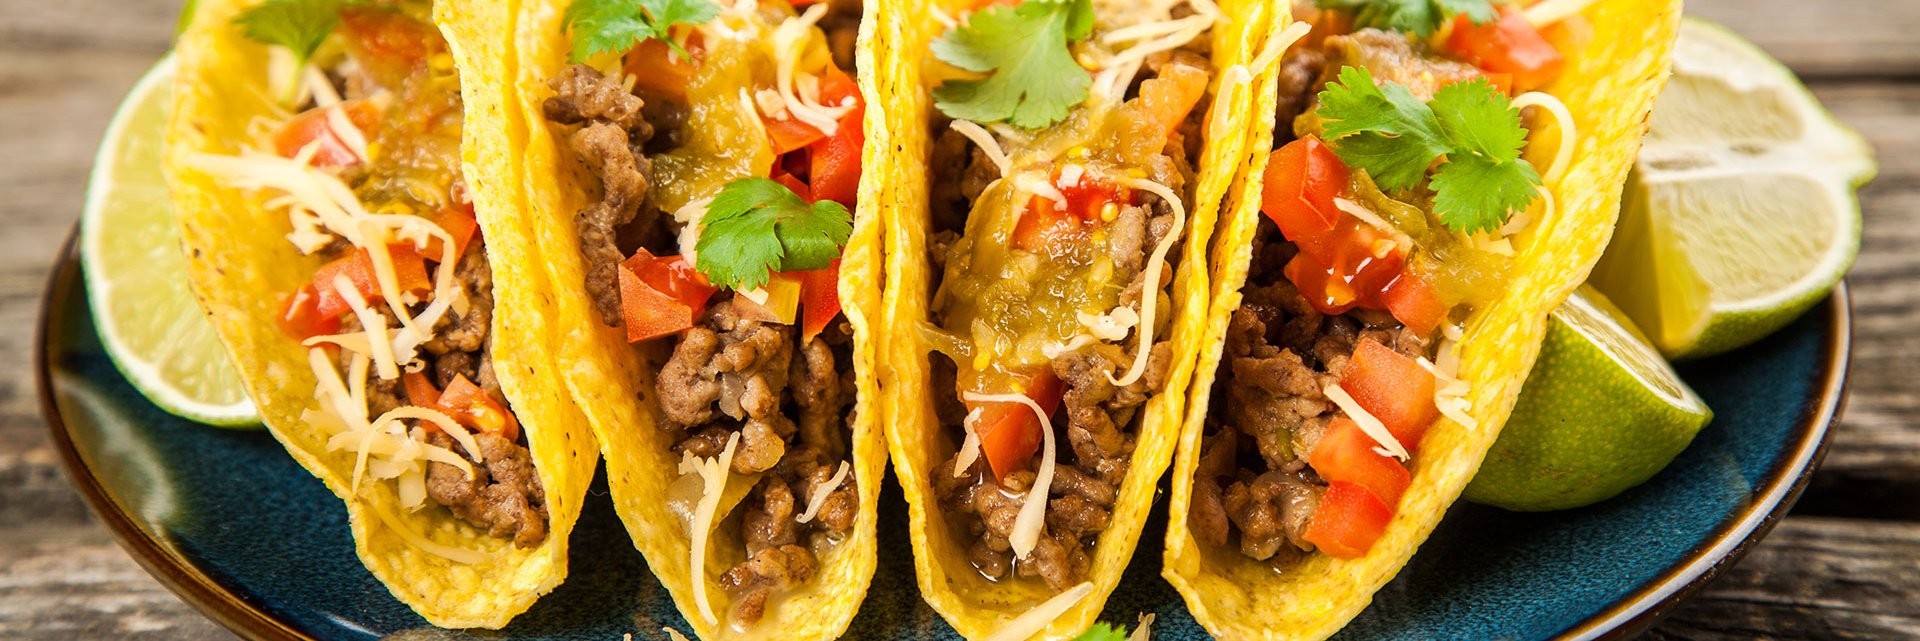 Tacos gibt es mit den unterschiedlichsten Füllungen und jetzt auch mit Taranteln.